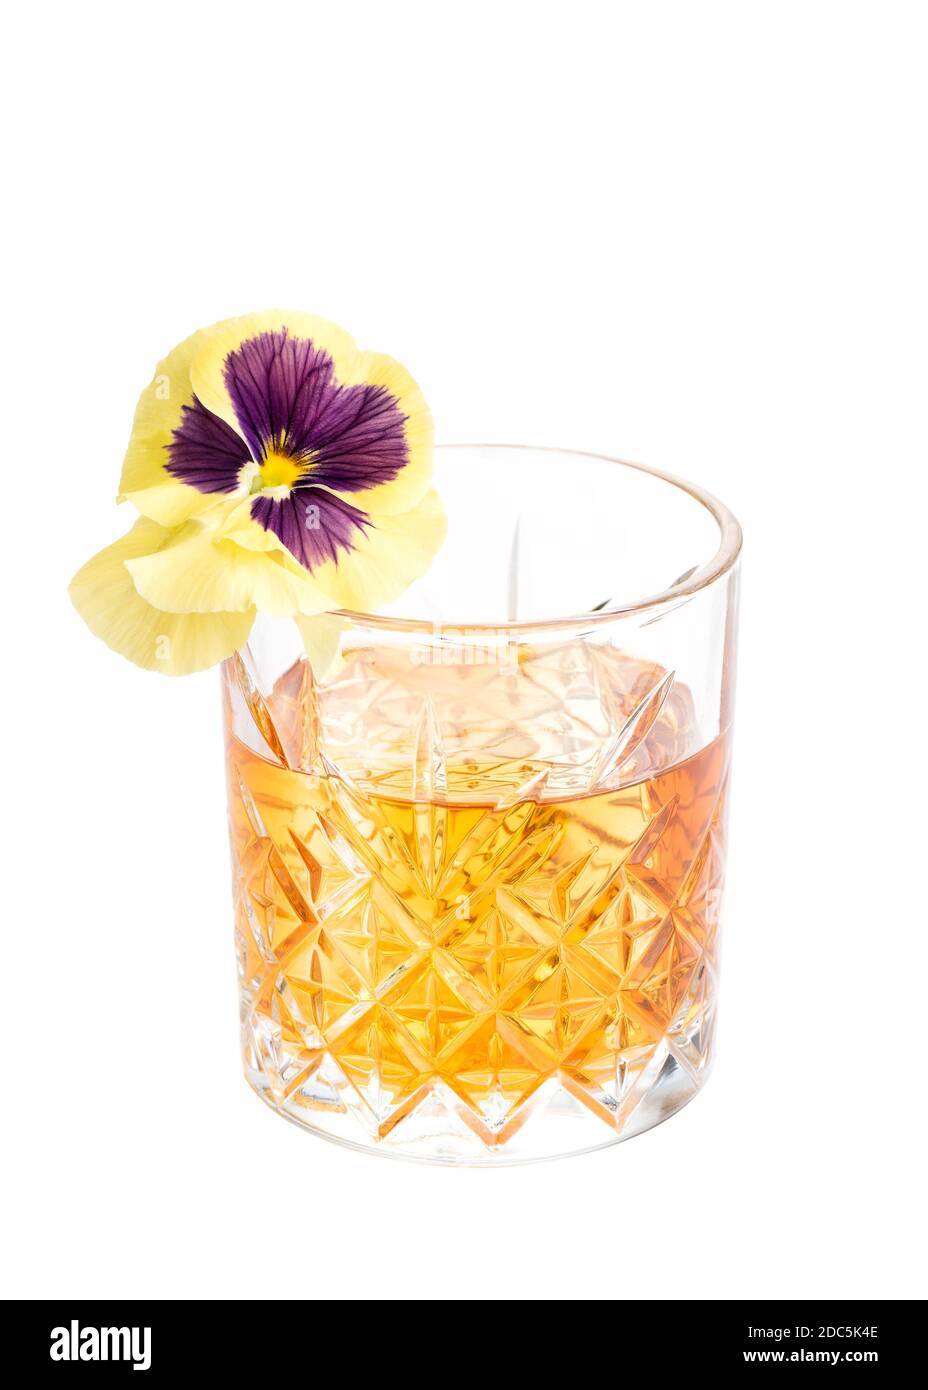 Alkoholischer Cocktail aus Kirsche, altmodisch, mit Whiskey und Eiswürfel in einem Glas, isoliert auf weißem Hintergrund. Stockfoto